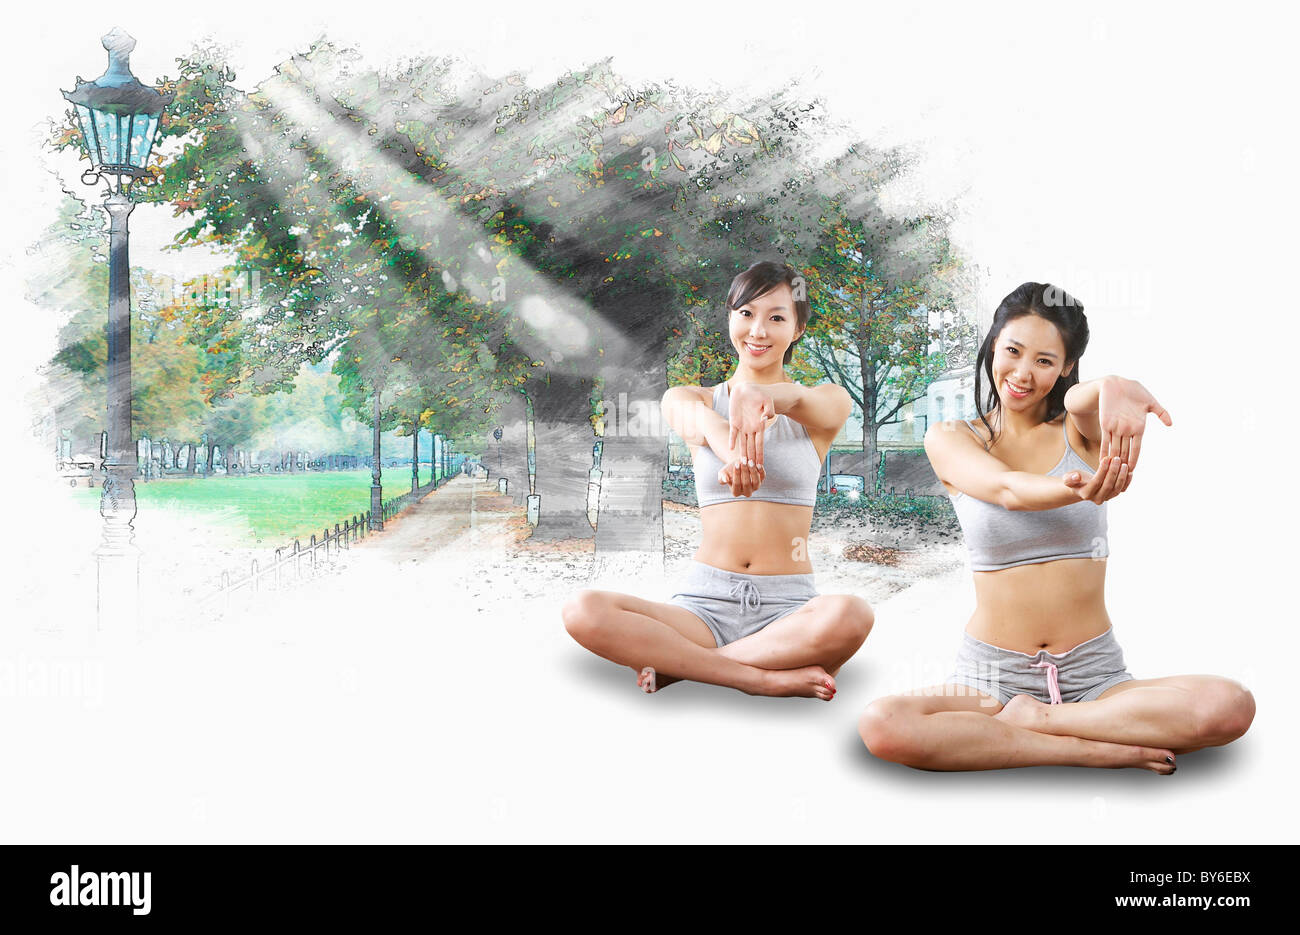 women exercising yoga together Stock Photo